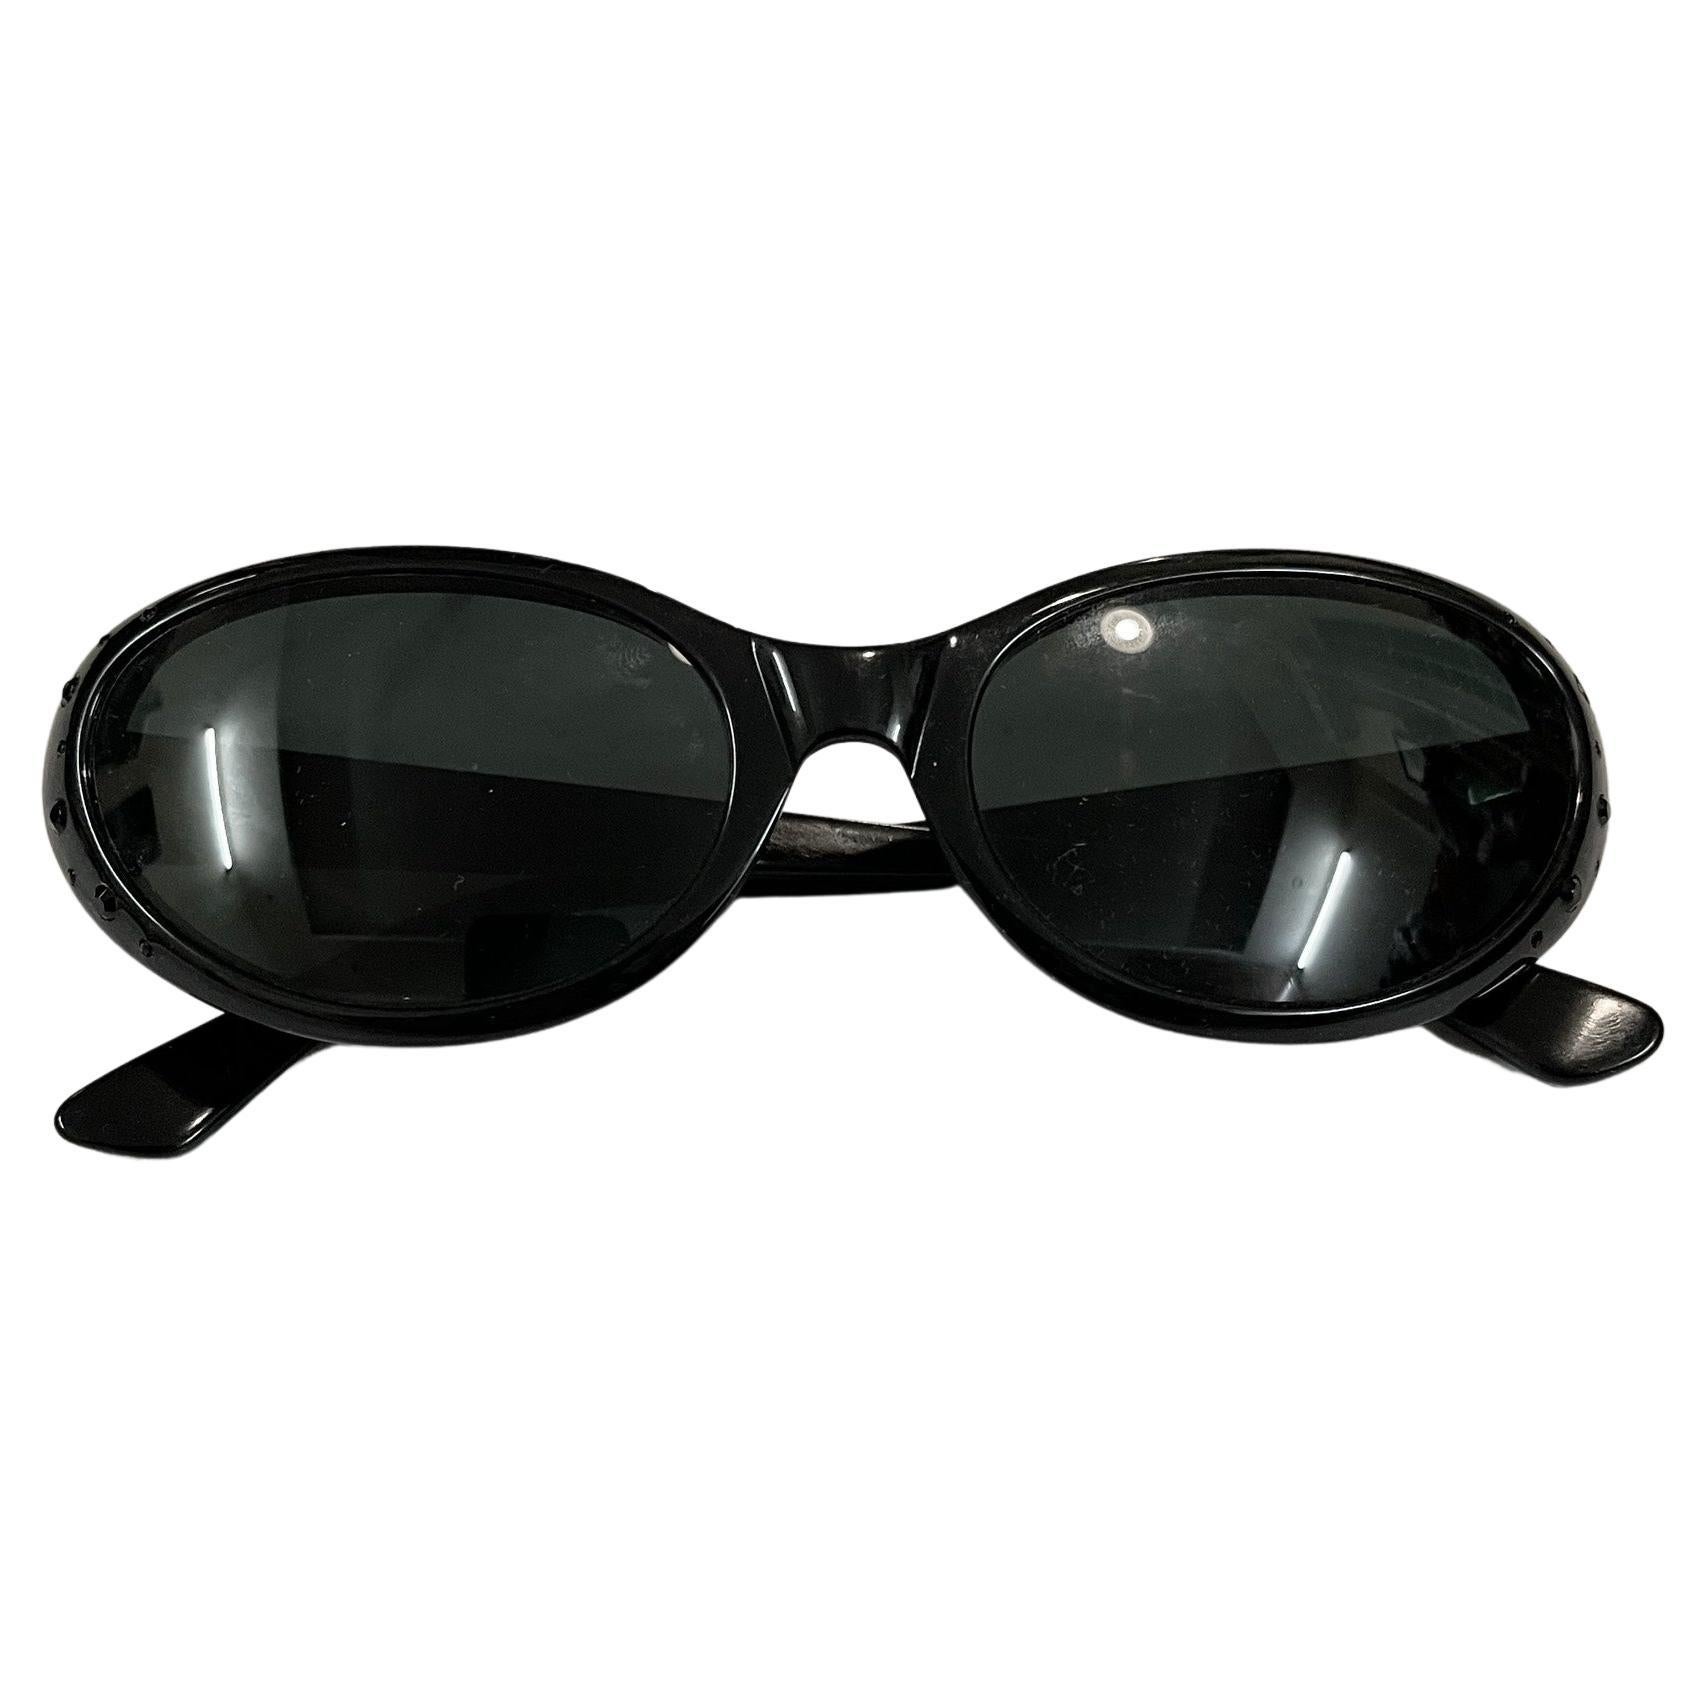 Tullio Abbate 80s Sunglasses Made in Italy. Original Vintage 